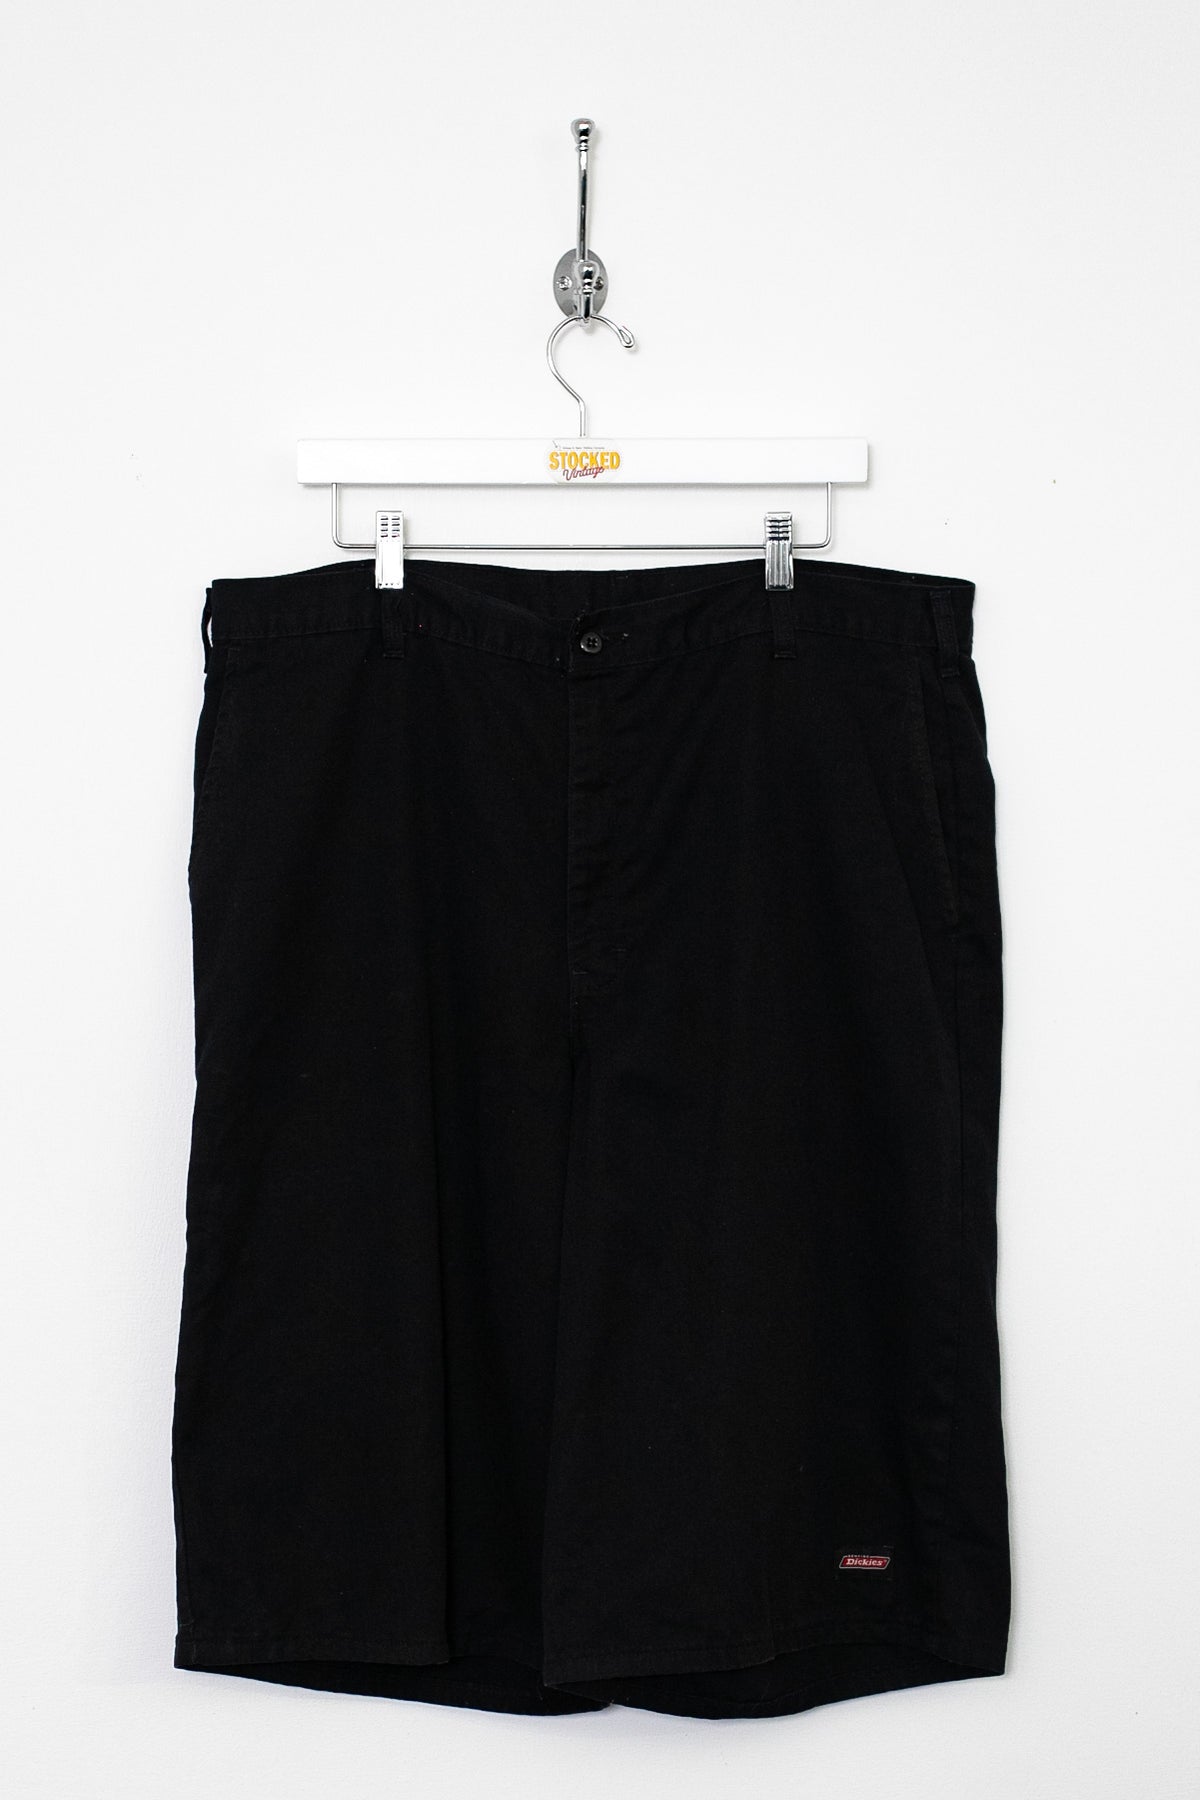 00s Dickies Shorts (XL)